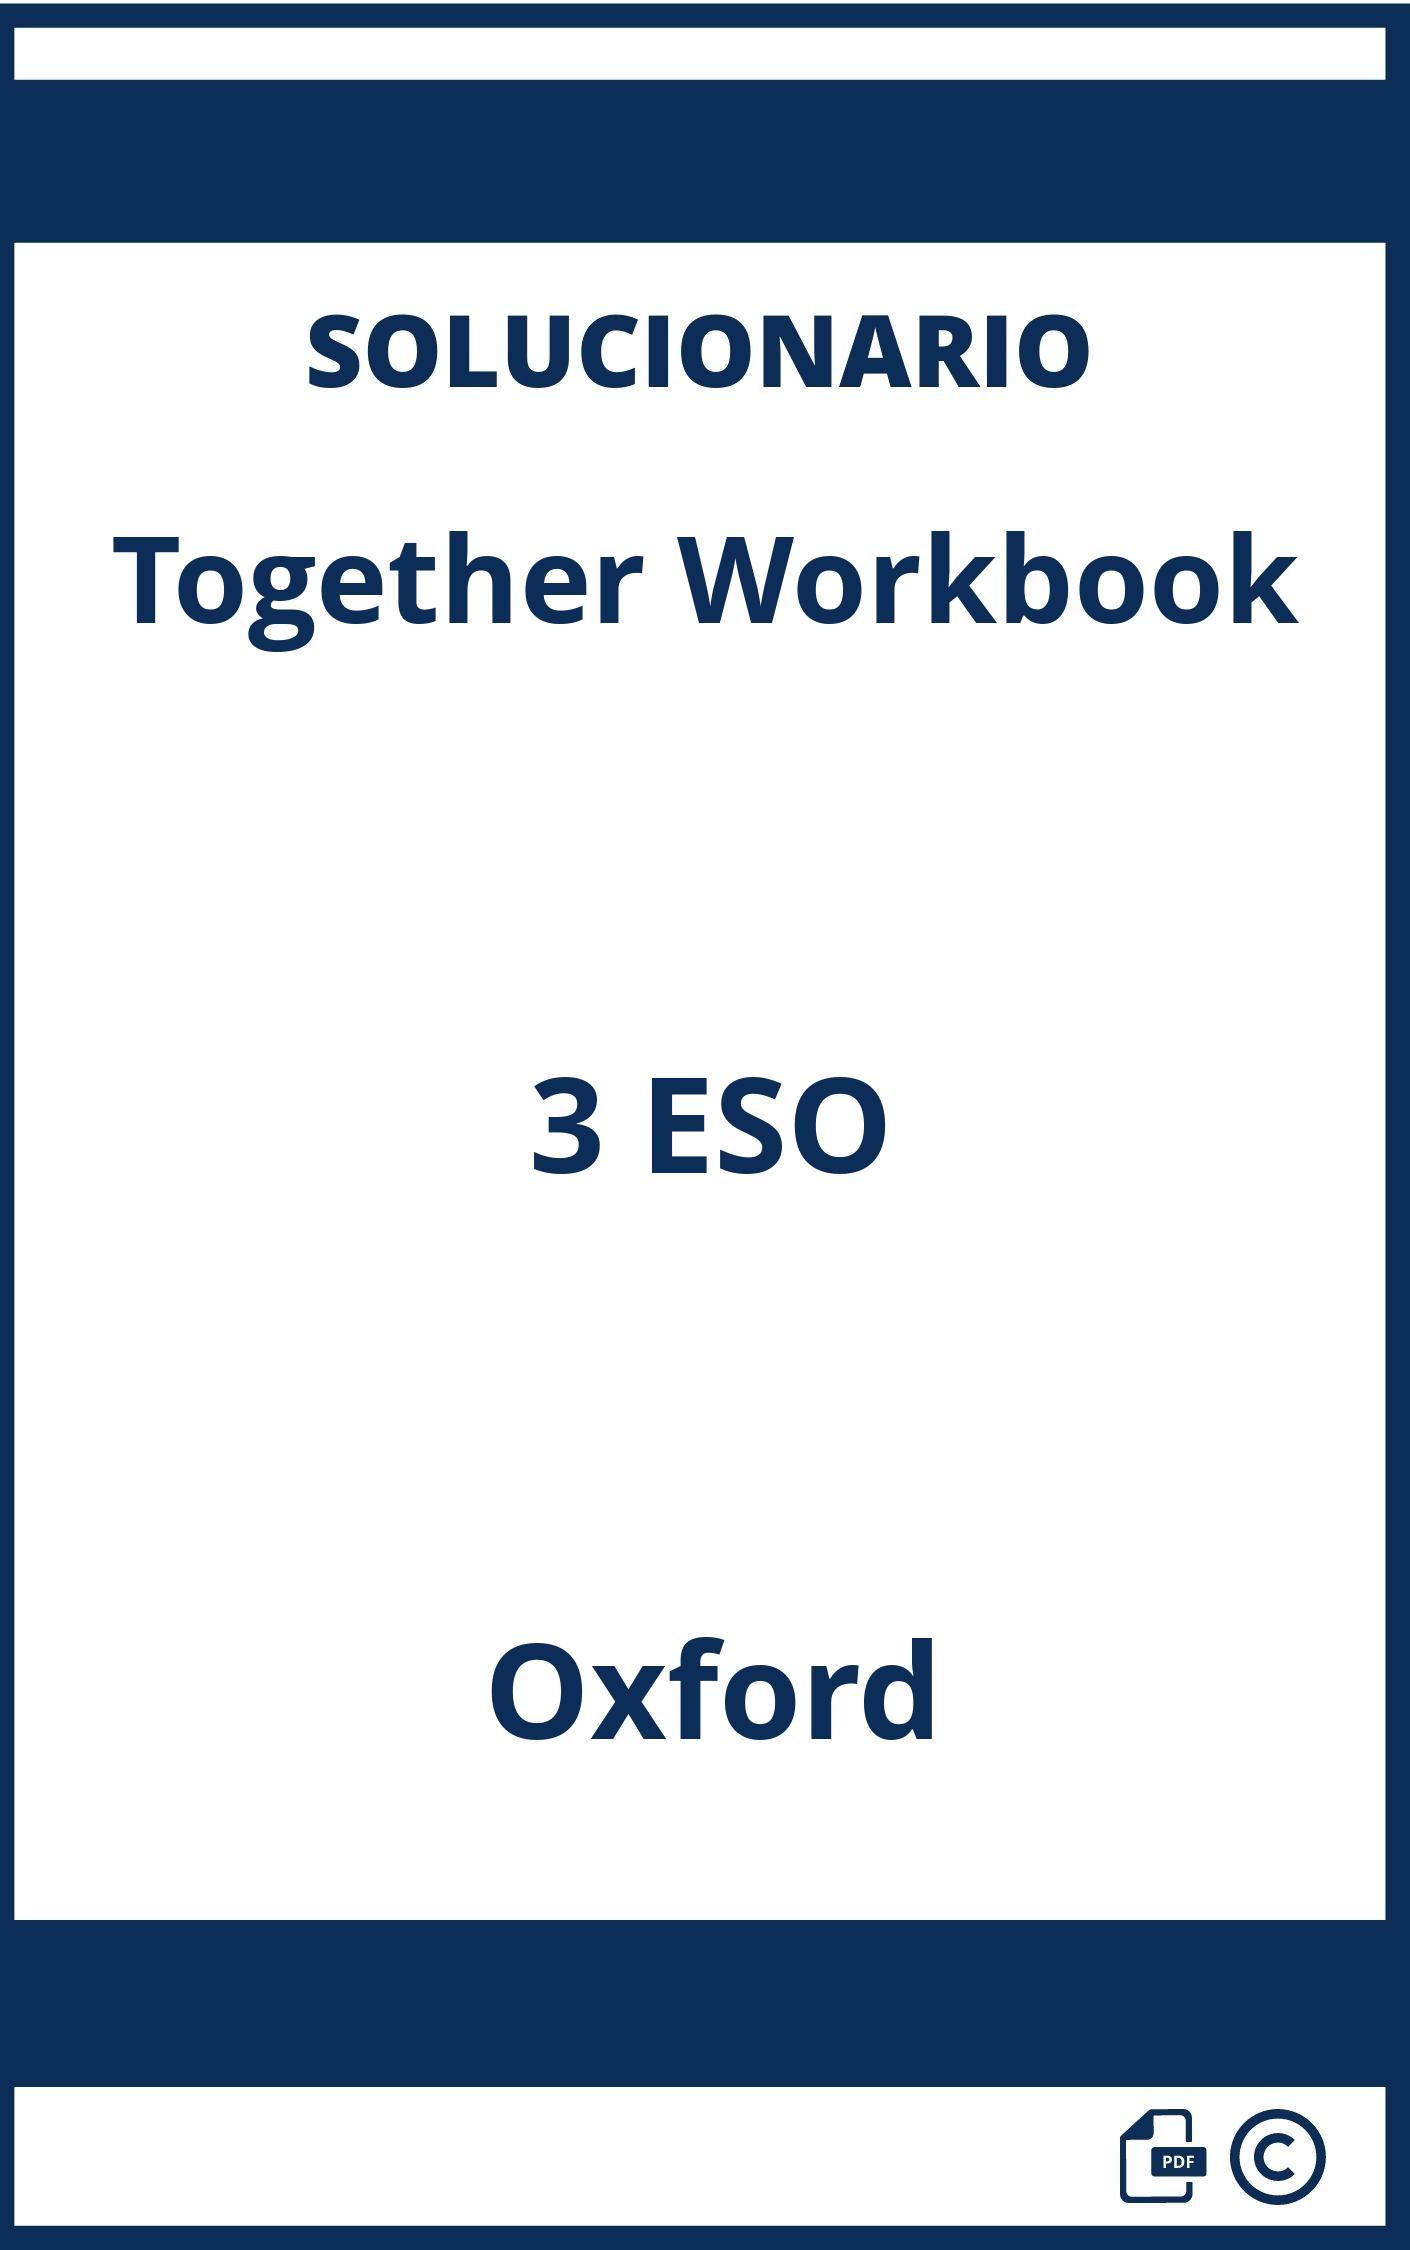 Solucionario Together Workbook 3 ESO Oxford